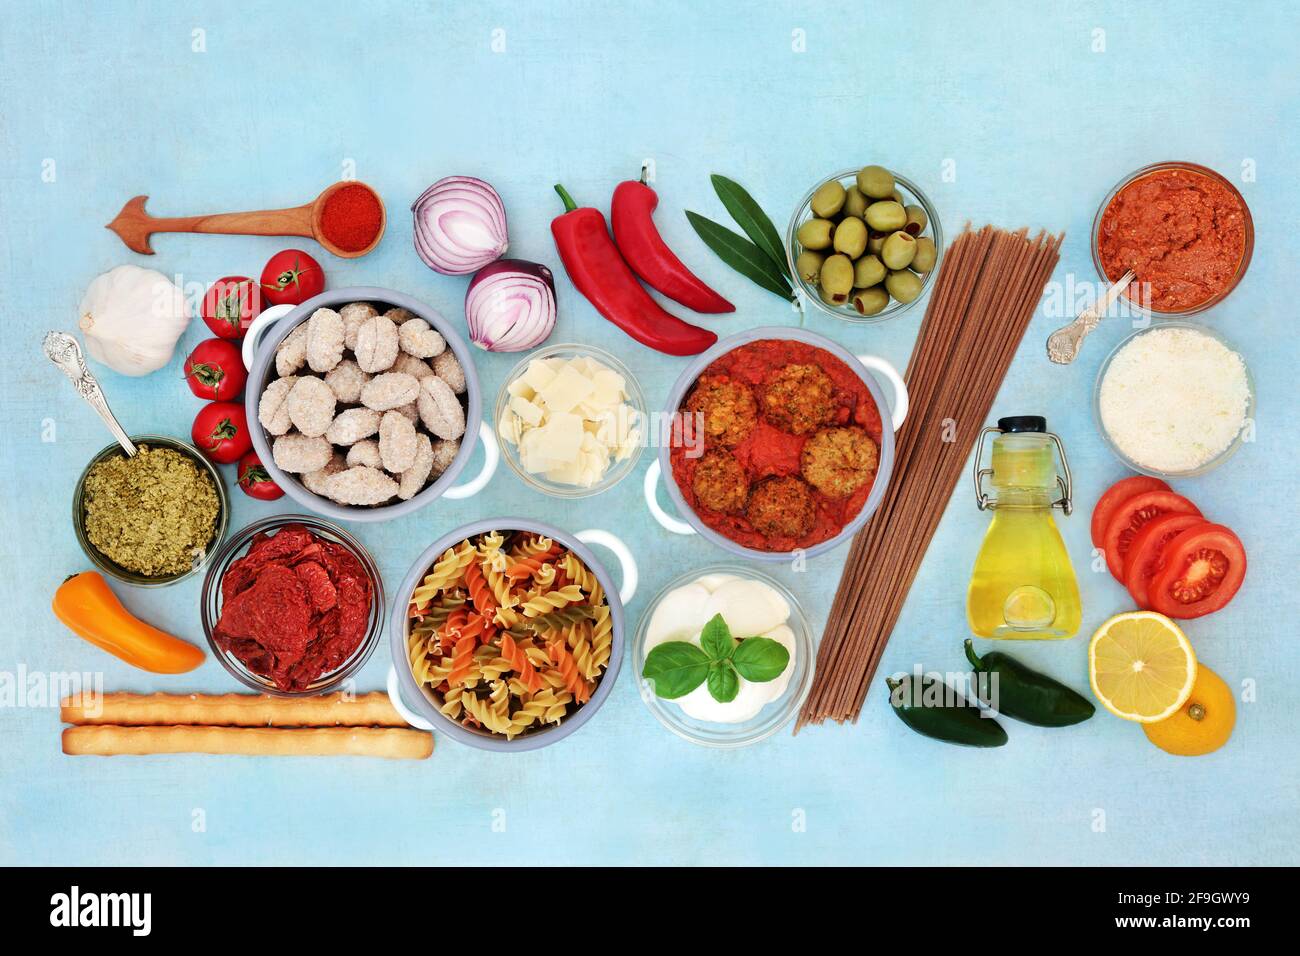 Alimentazione sana ed equilibrata italiana alta in antiossidanti, antocianine, fibra, licopene, omega 3 e proteine. Con polpette, formaggi, verdure, pasta. Foto Stock